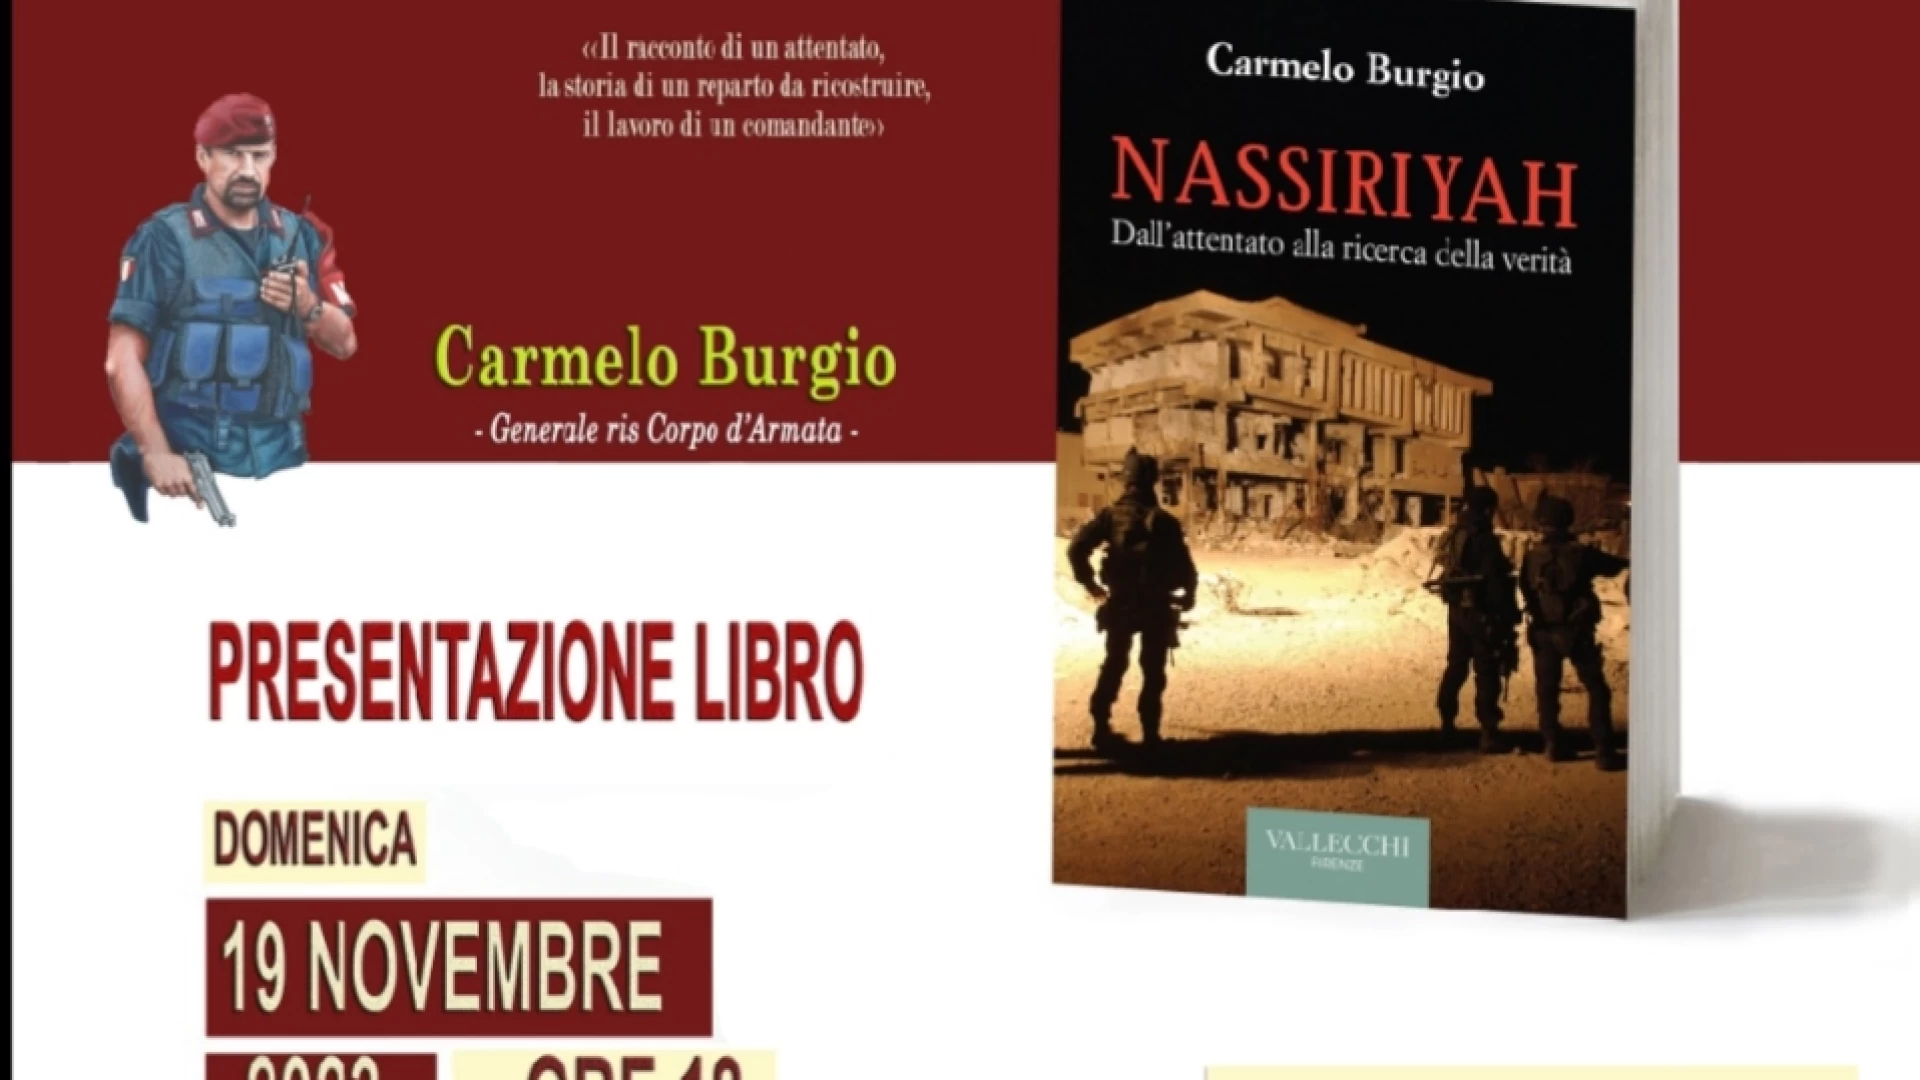 Il libro del generale Carmelo Burgio su Nassiriya verrà presentato al Palazzo Vecchiarino di San Pietro Infine il prossimo 19 novembre.